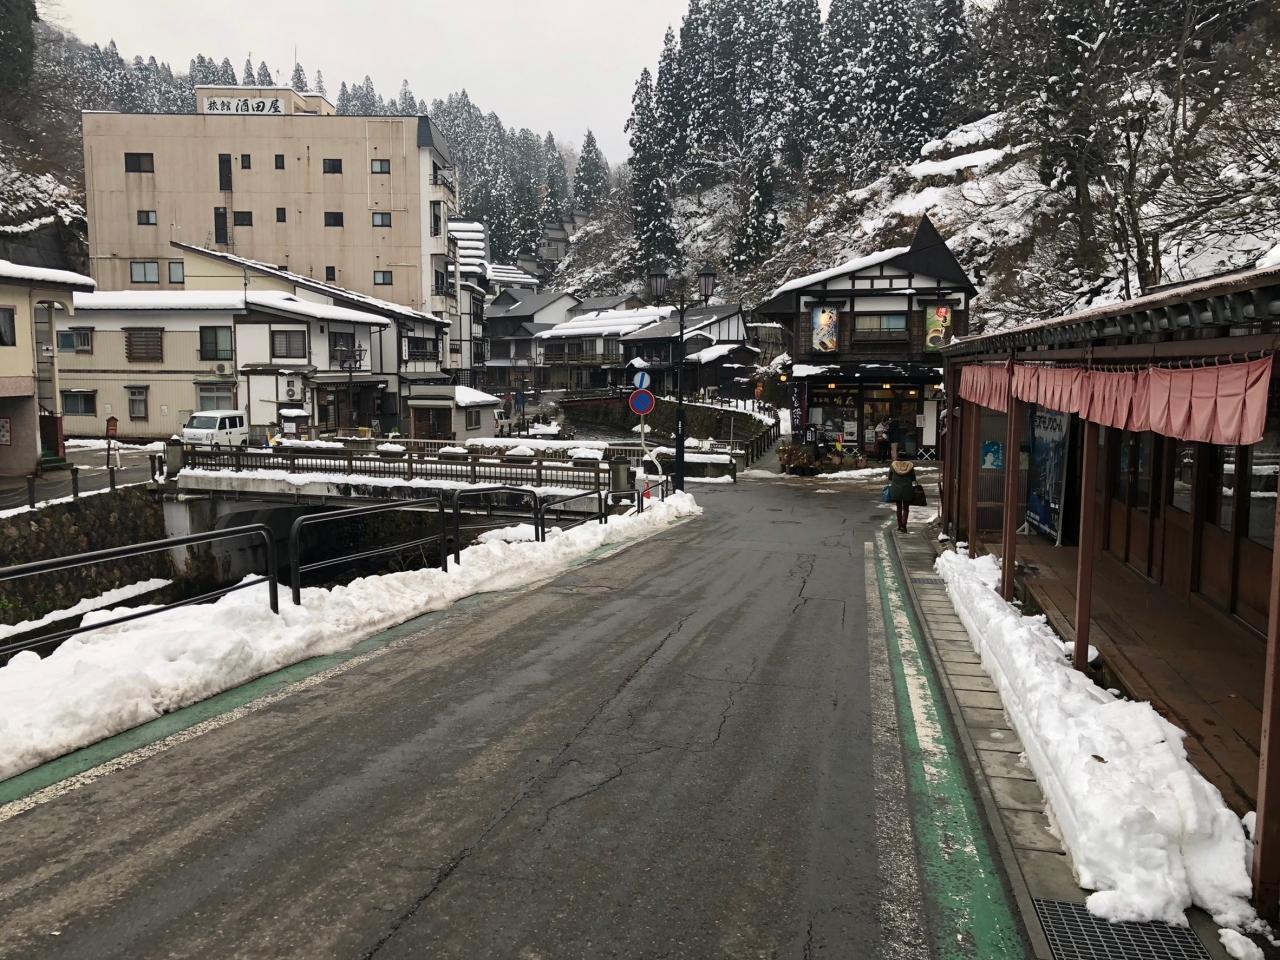 雪の山形11月の銀山温泉 銀山温泉 山形県 の旅行記 ブログ By あいまいみーさん フォートラベル